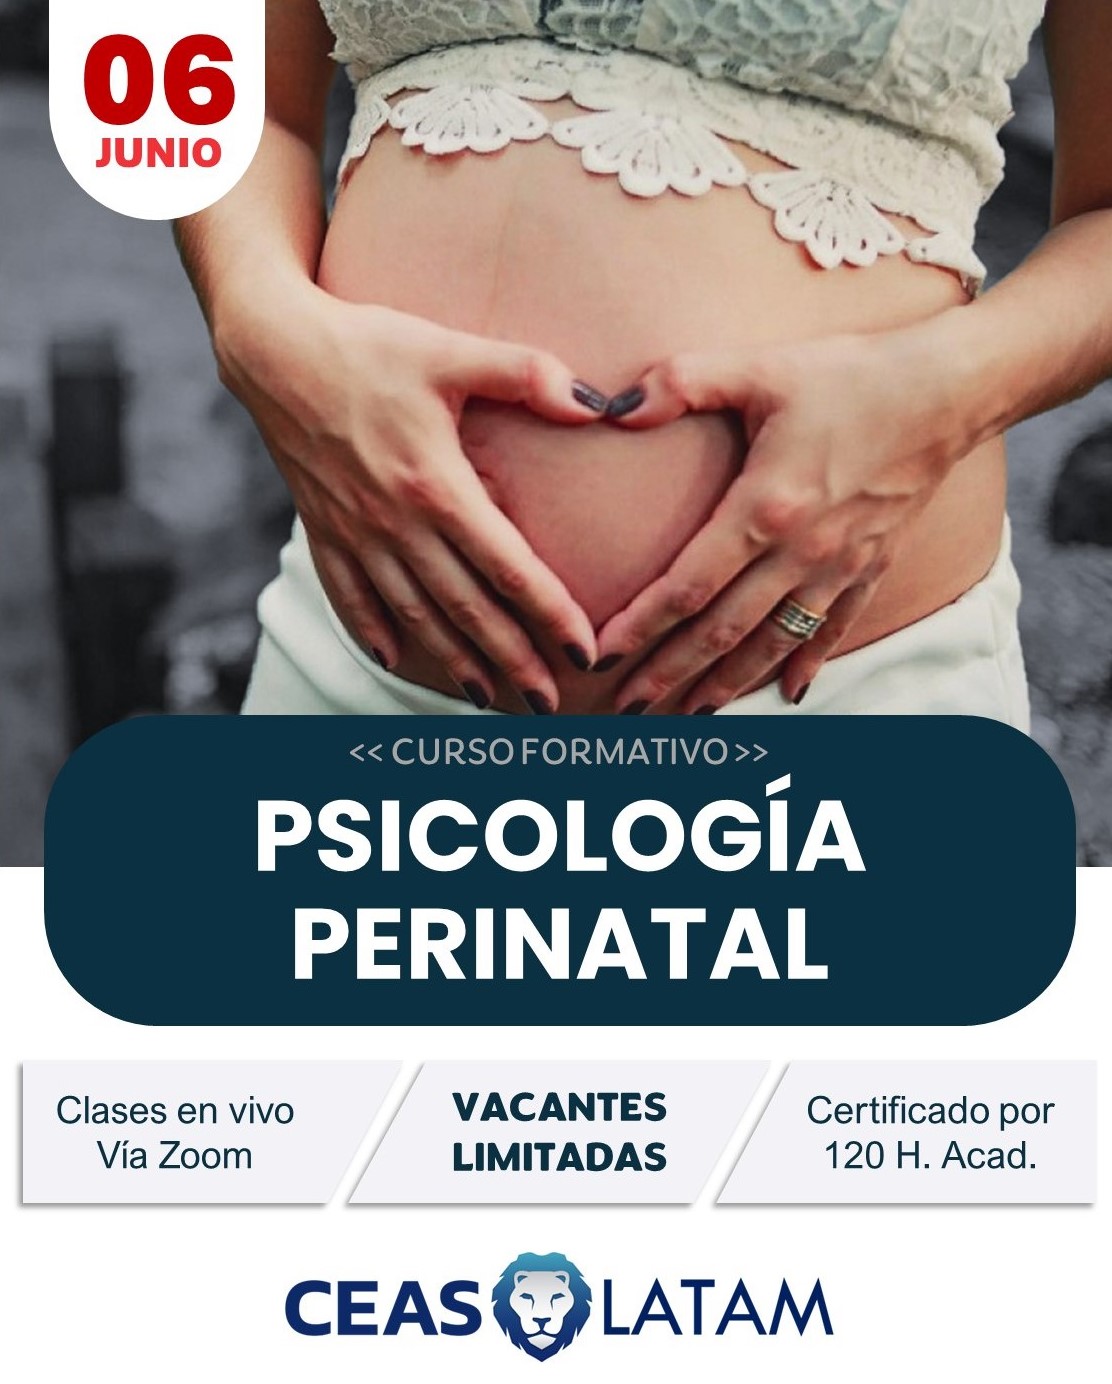 Course Image PSICOLOGÍA PERINATAL - PG